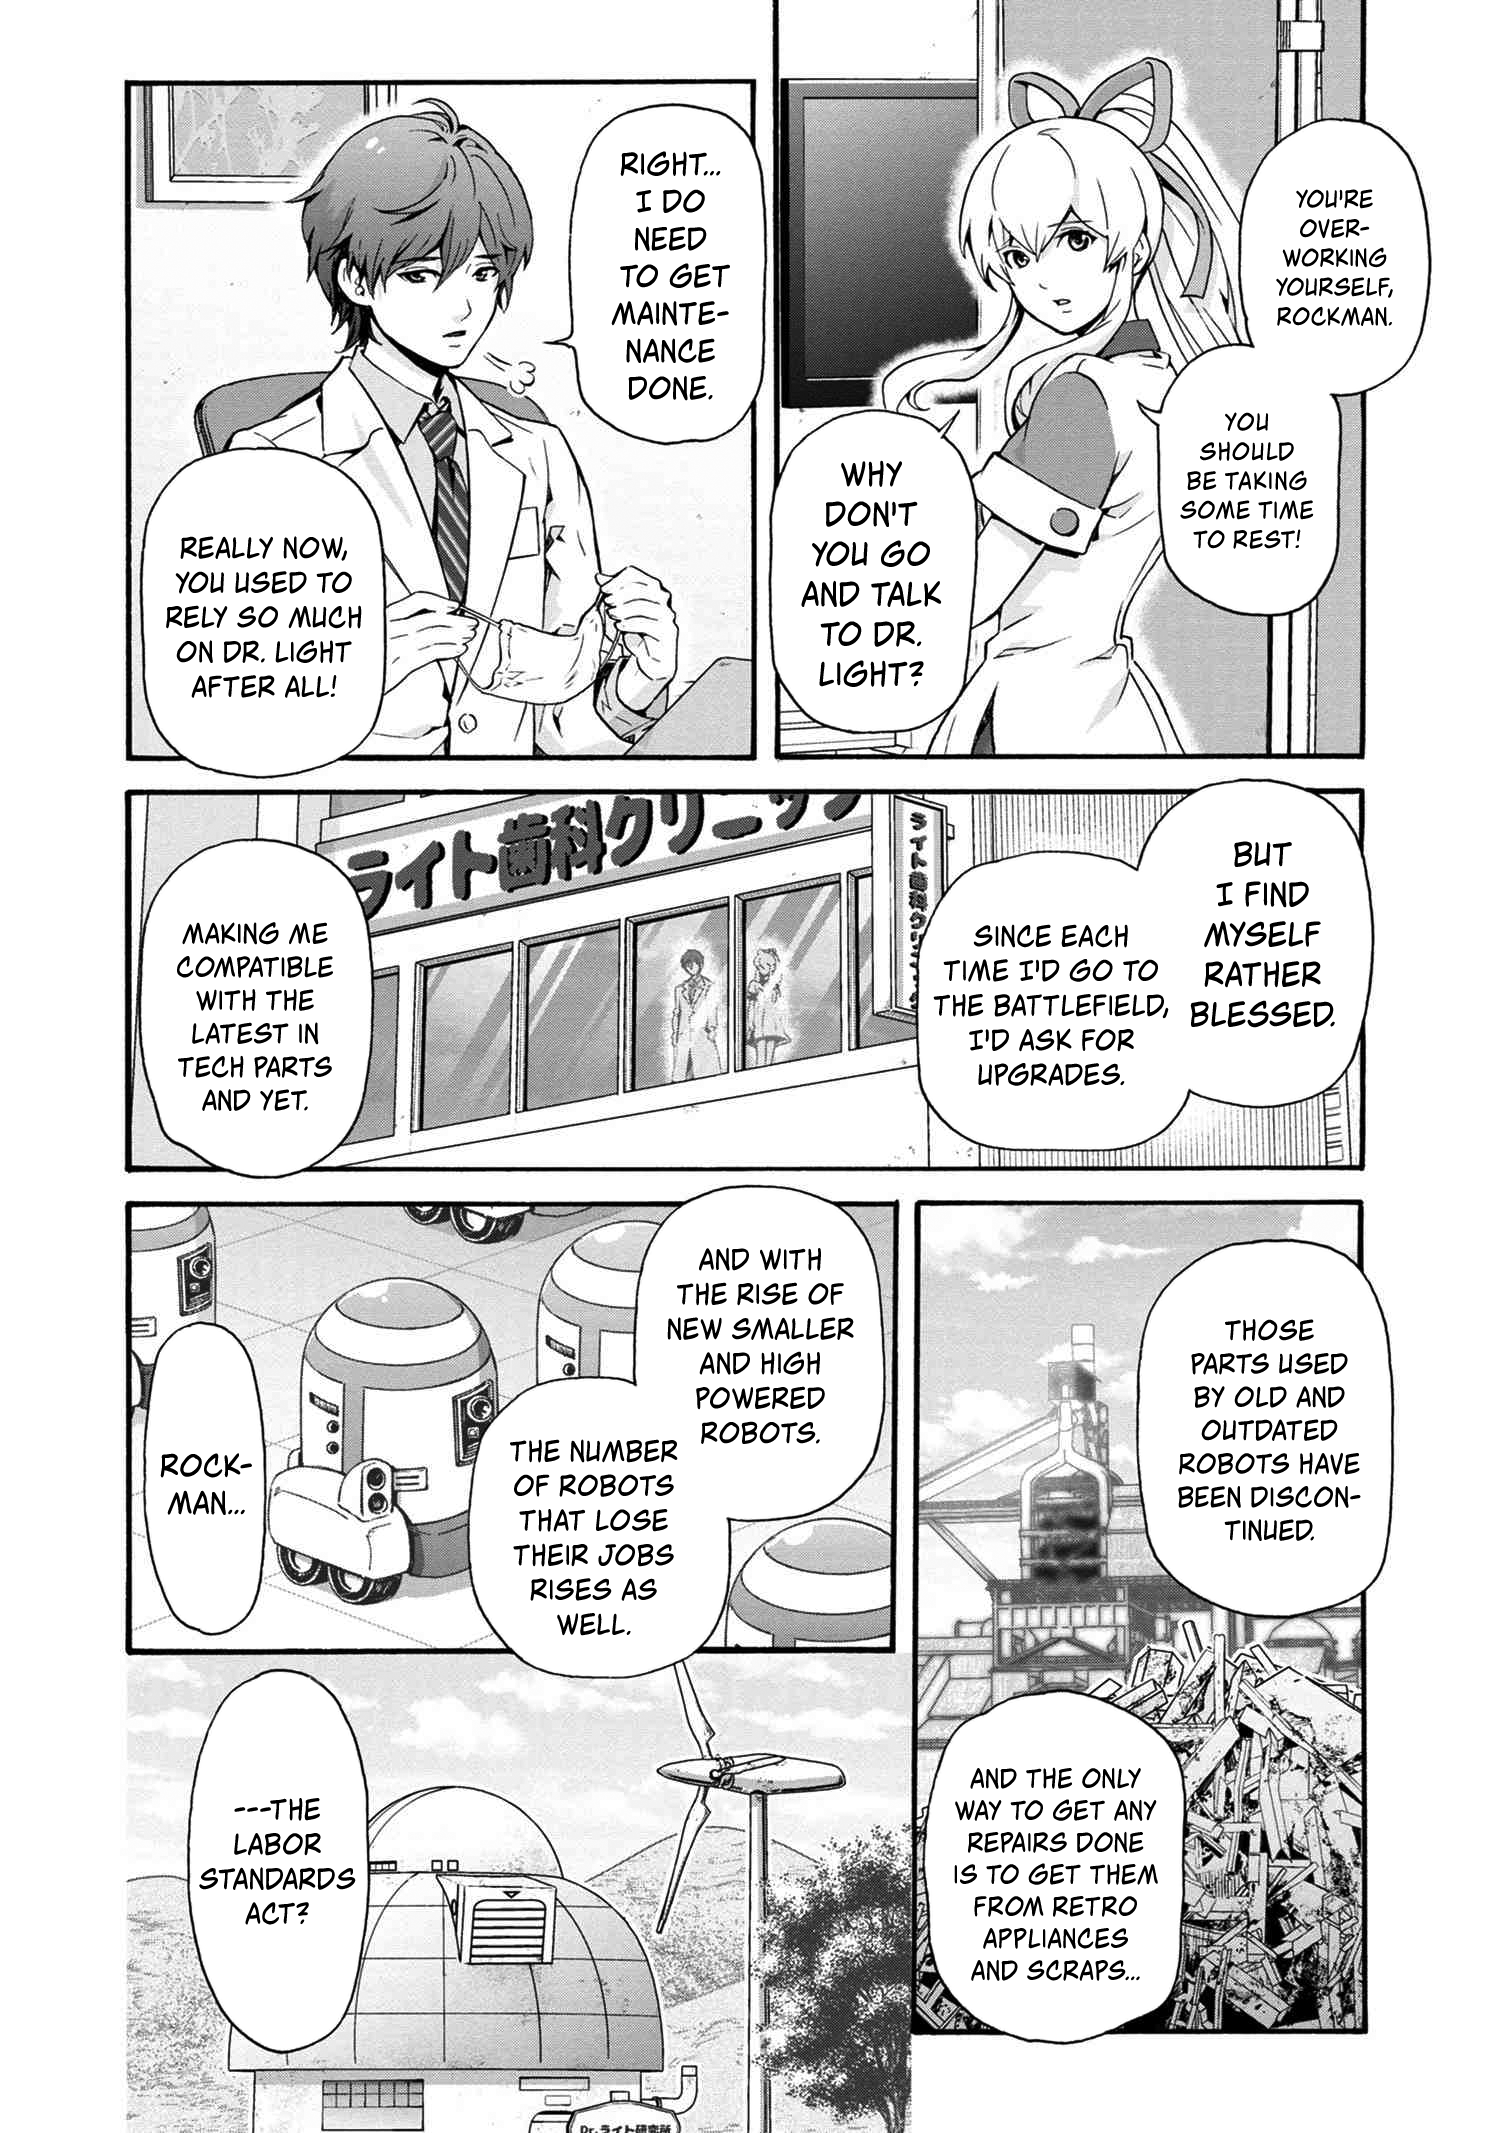 Rockman-San - chapter 1 - #5